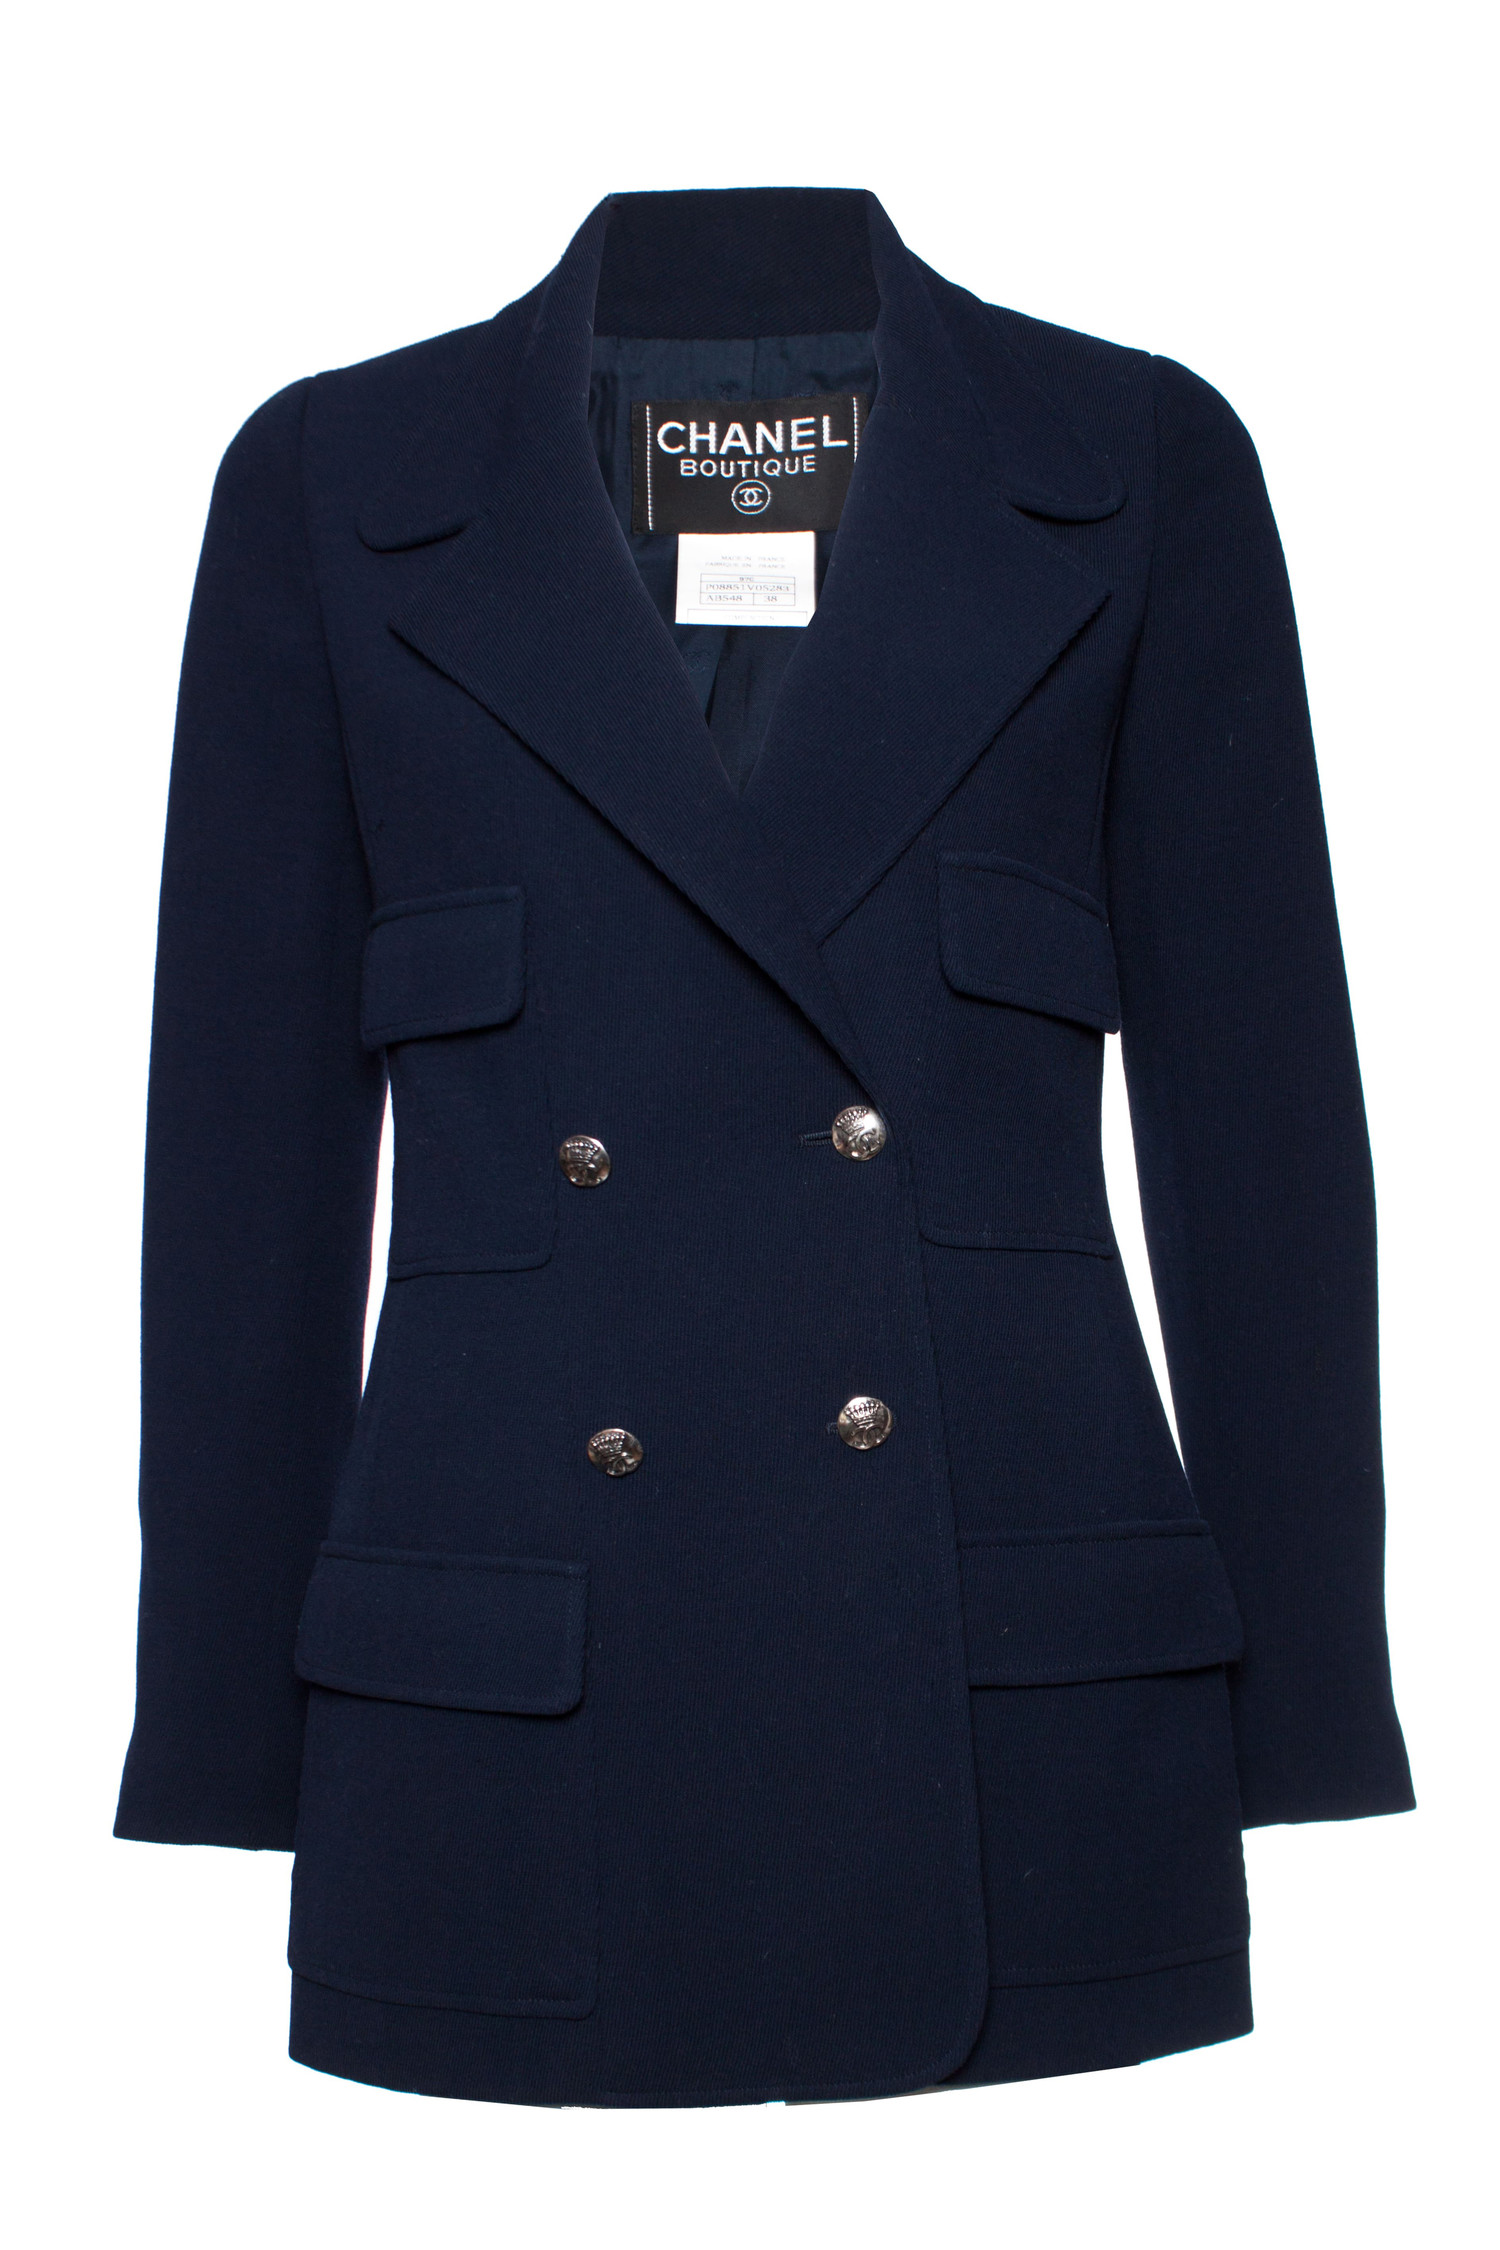 heb vertrouwen betreuren Wantrouwen Chanel, blauwe wollen blazer jas. - Unique Designer Pieces